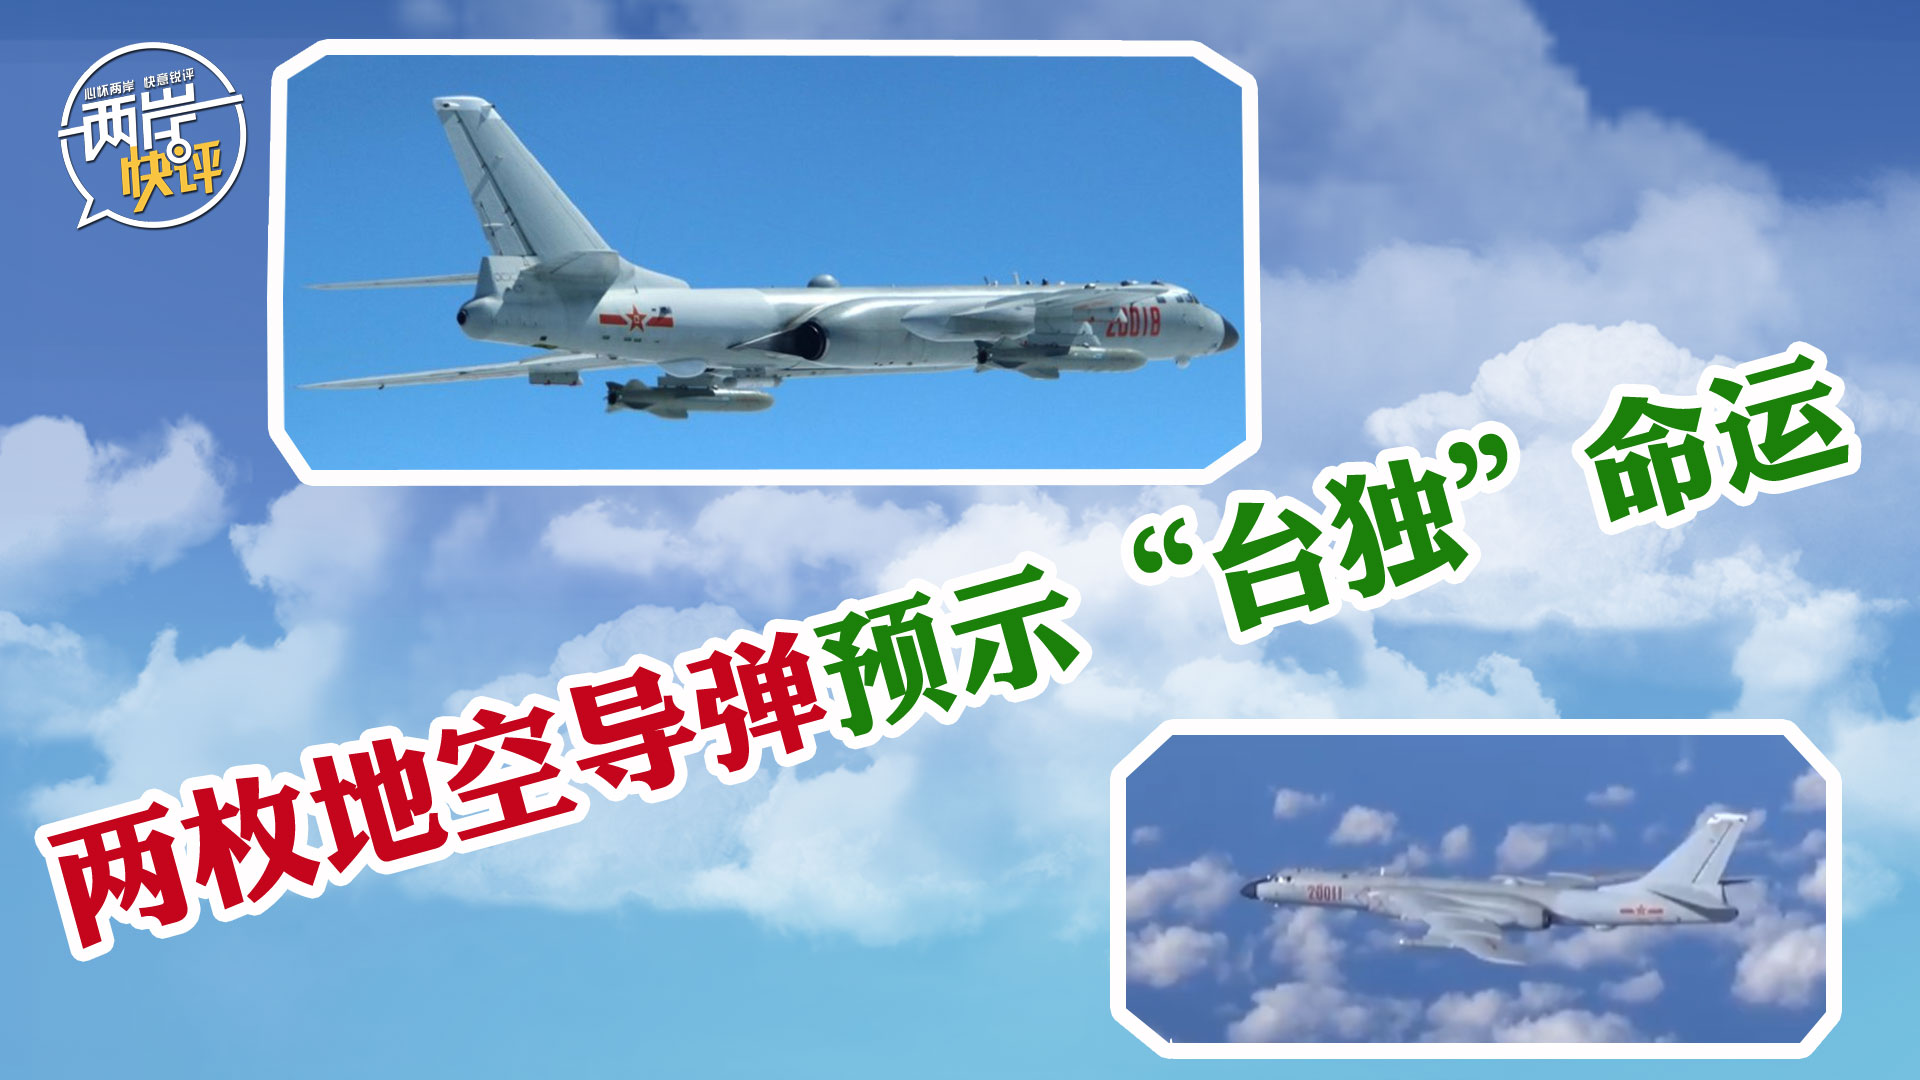 台媒称解放军可能出动东风新锐弹种导弹或首次飞越台湾